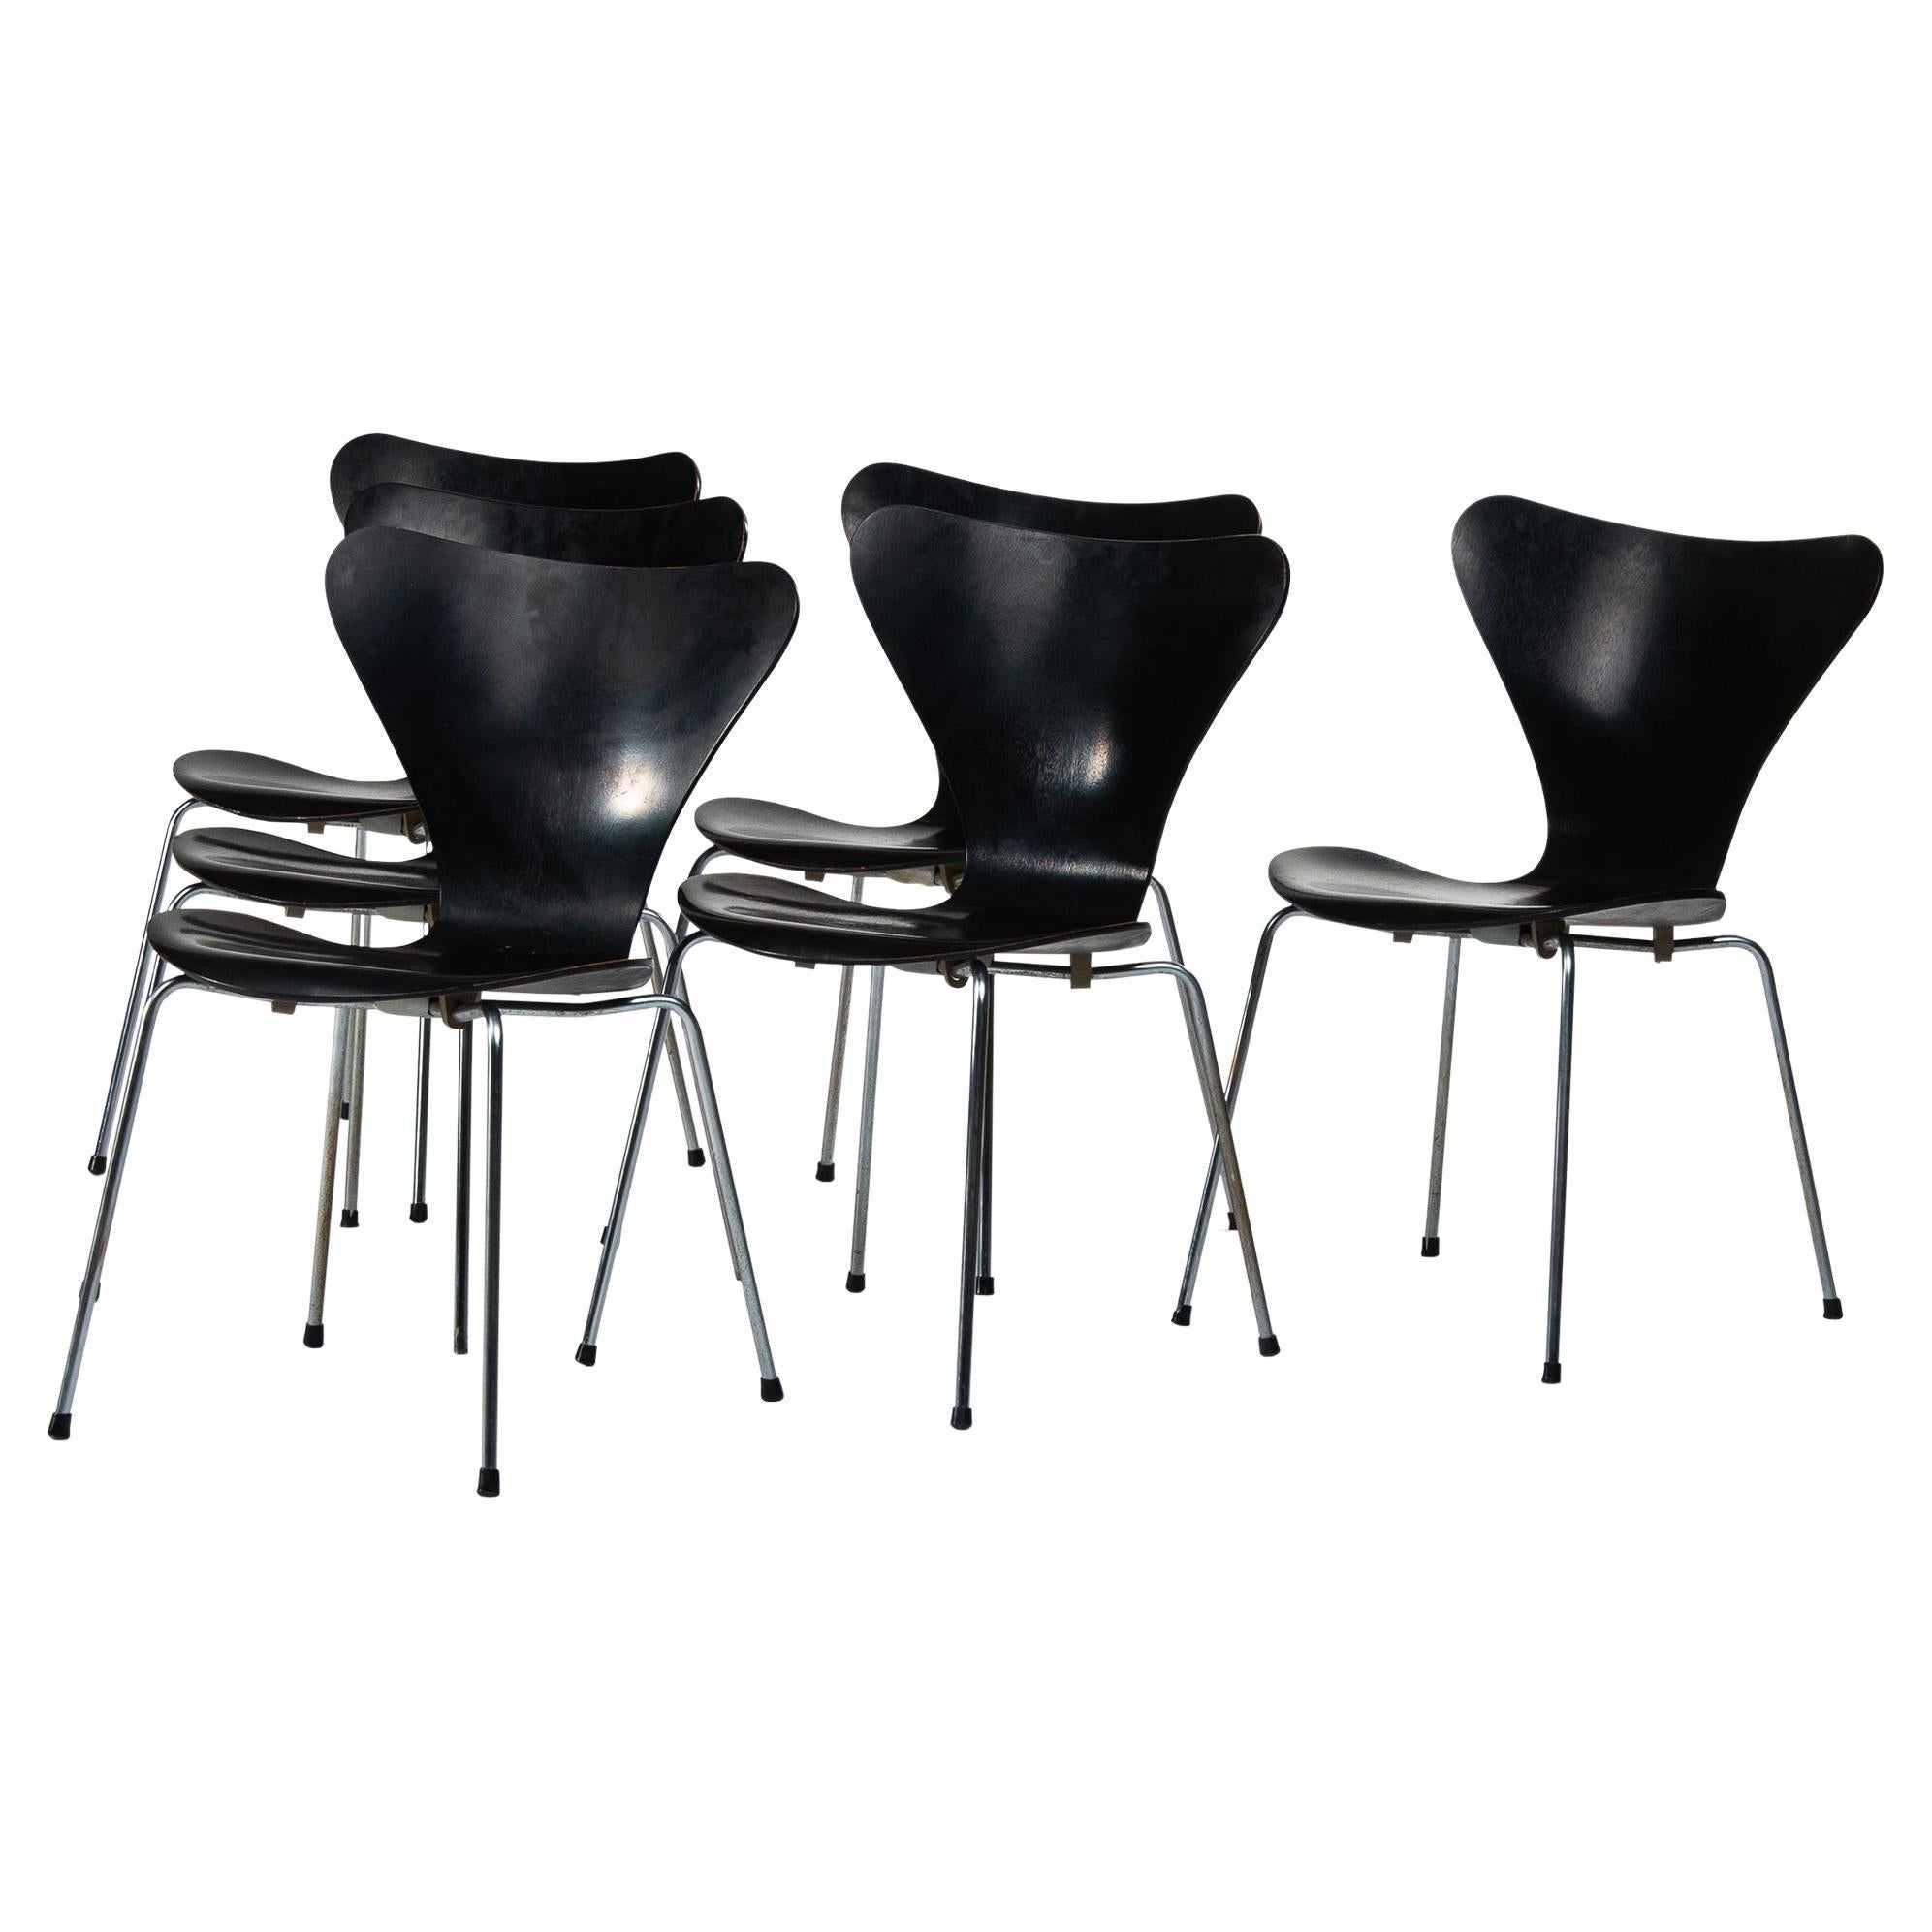 Six Black Arne Jacobsen Dining chairs Mod. 3107 for Fritz Hansen Denmark 1964